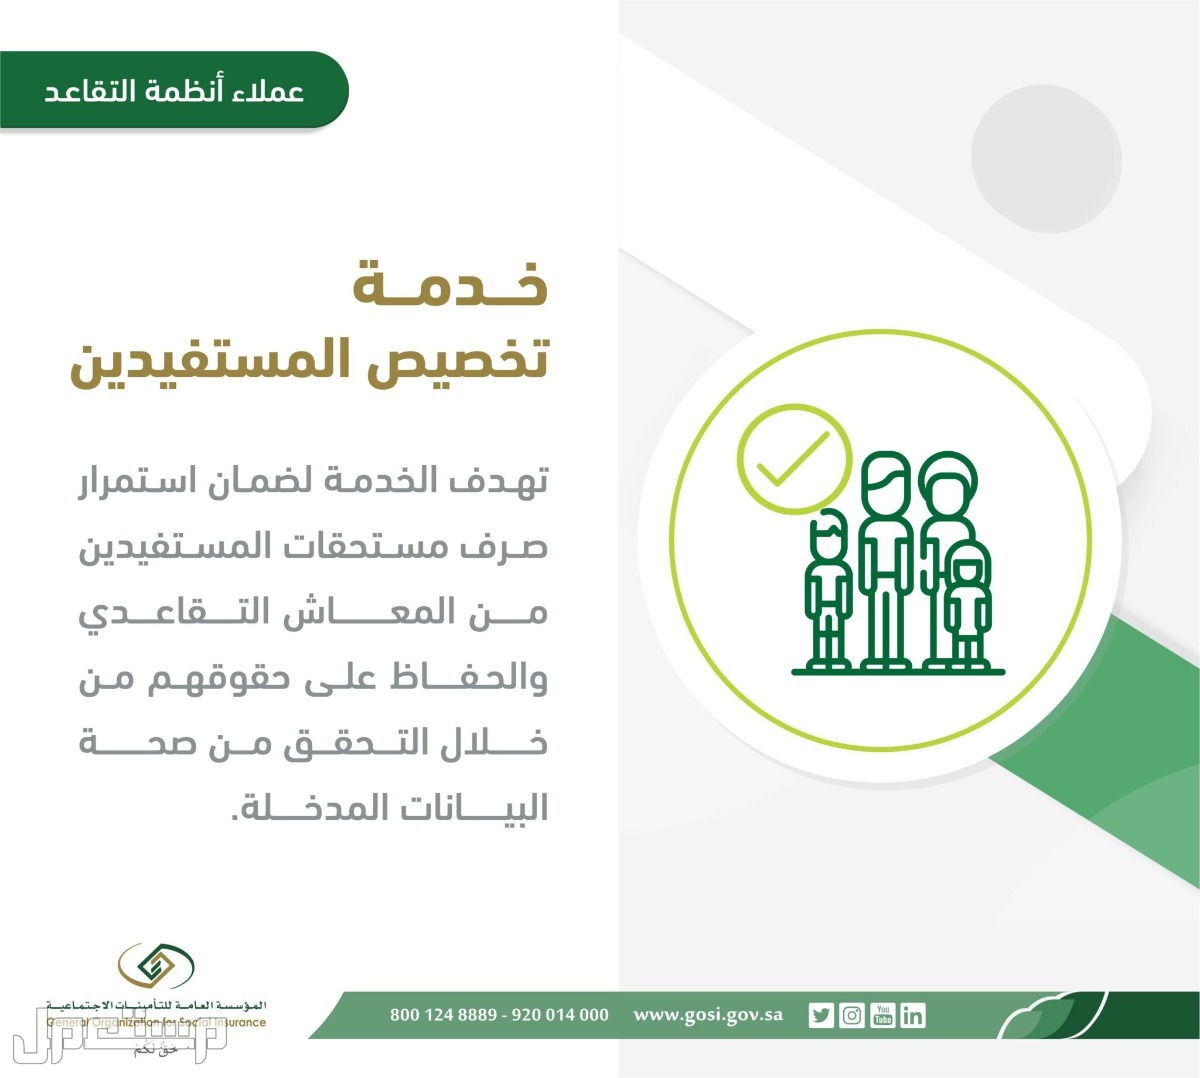 تعرف على خطوات تقديم طلب تخصيص المستفيدين المستحقين لتسوية المعاش في ليبيا خدمة تخصيص المستفيدين